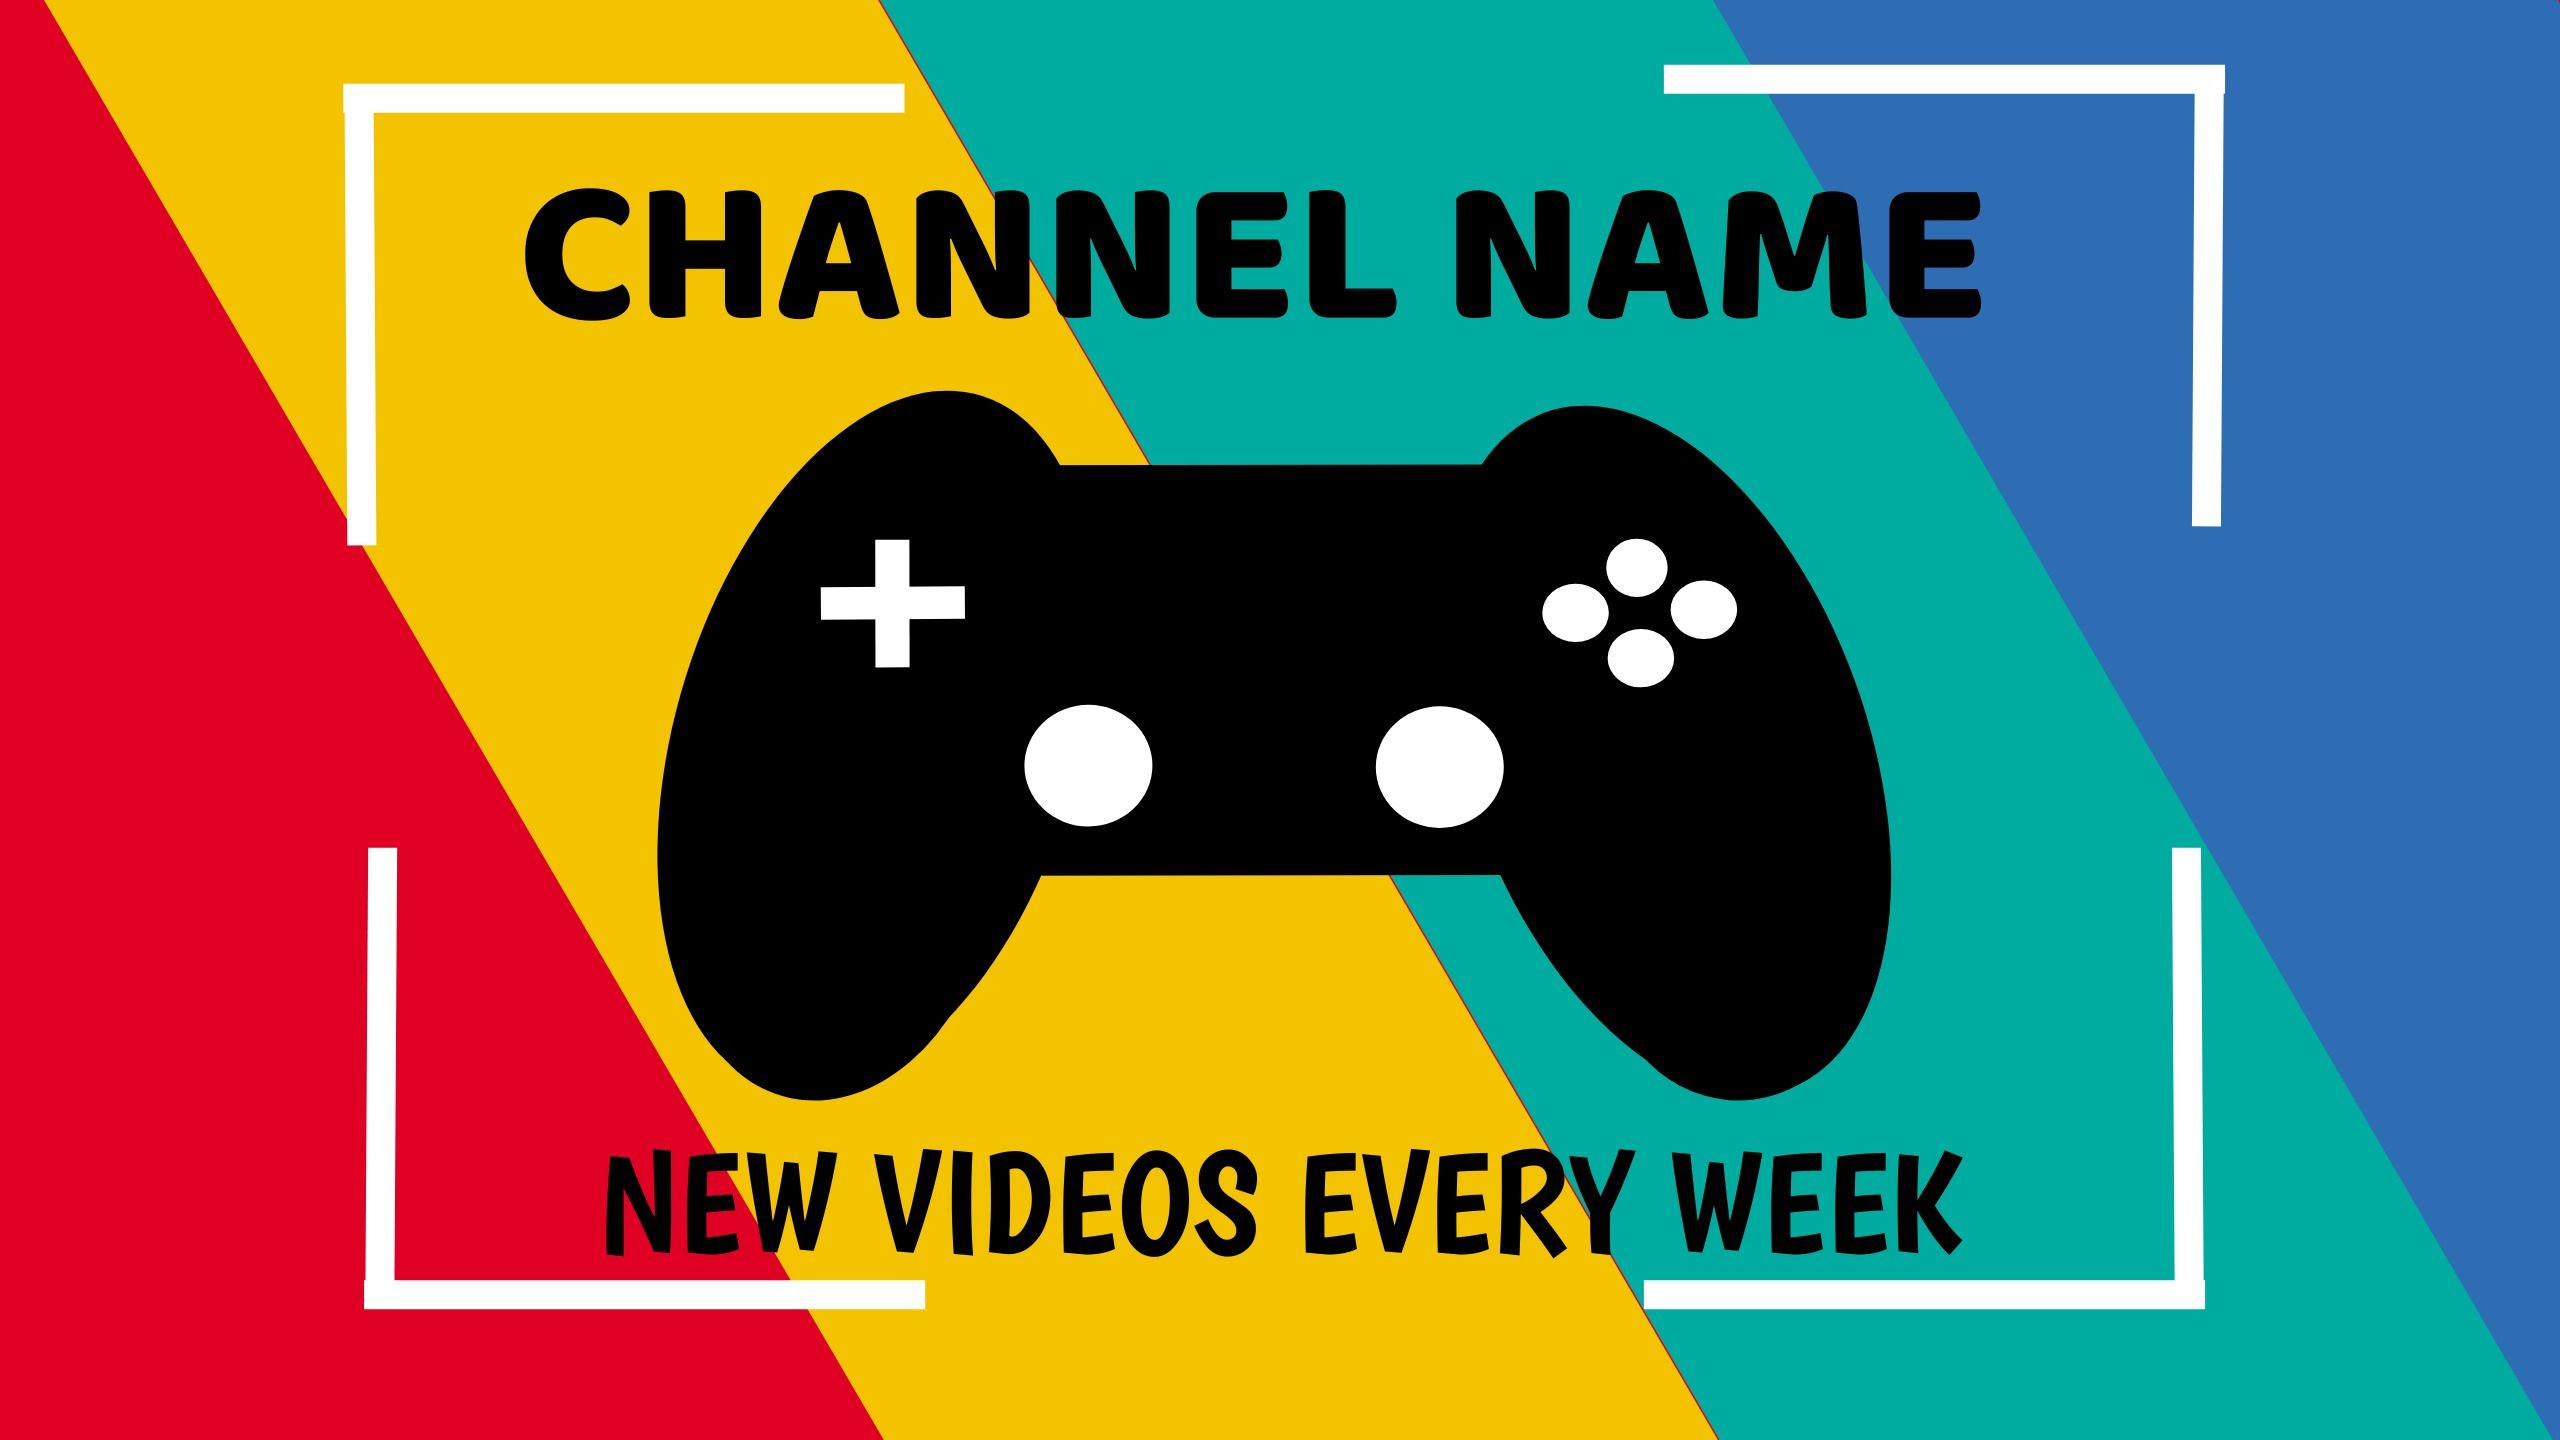 Design de modelo de banner do YouTube colorido com o texto &quot;Novos vídeos toda semana&quot; e um ícone de console no centro